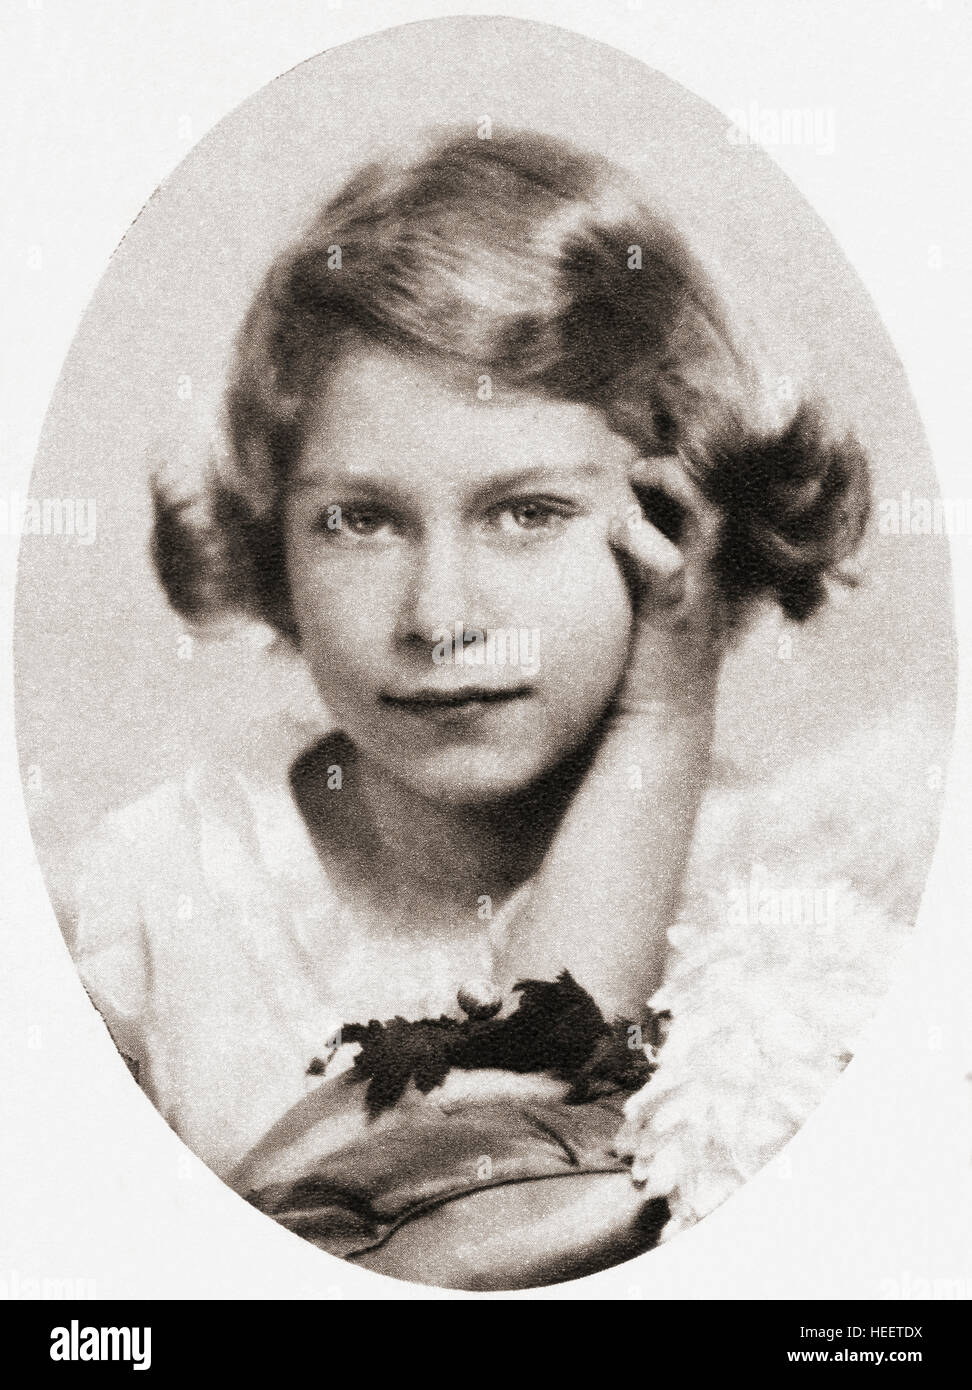 La princesse Elizabeth, future reine Elizabeth II, vue ici à neuf ans. Elizabeth II, 1926 - 2022. Reine du Royaume-Uni, du Canada, de l'Australie et de la Nouvelle-Zélande. Banque D'Images